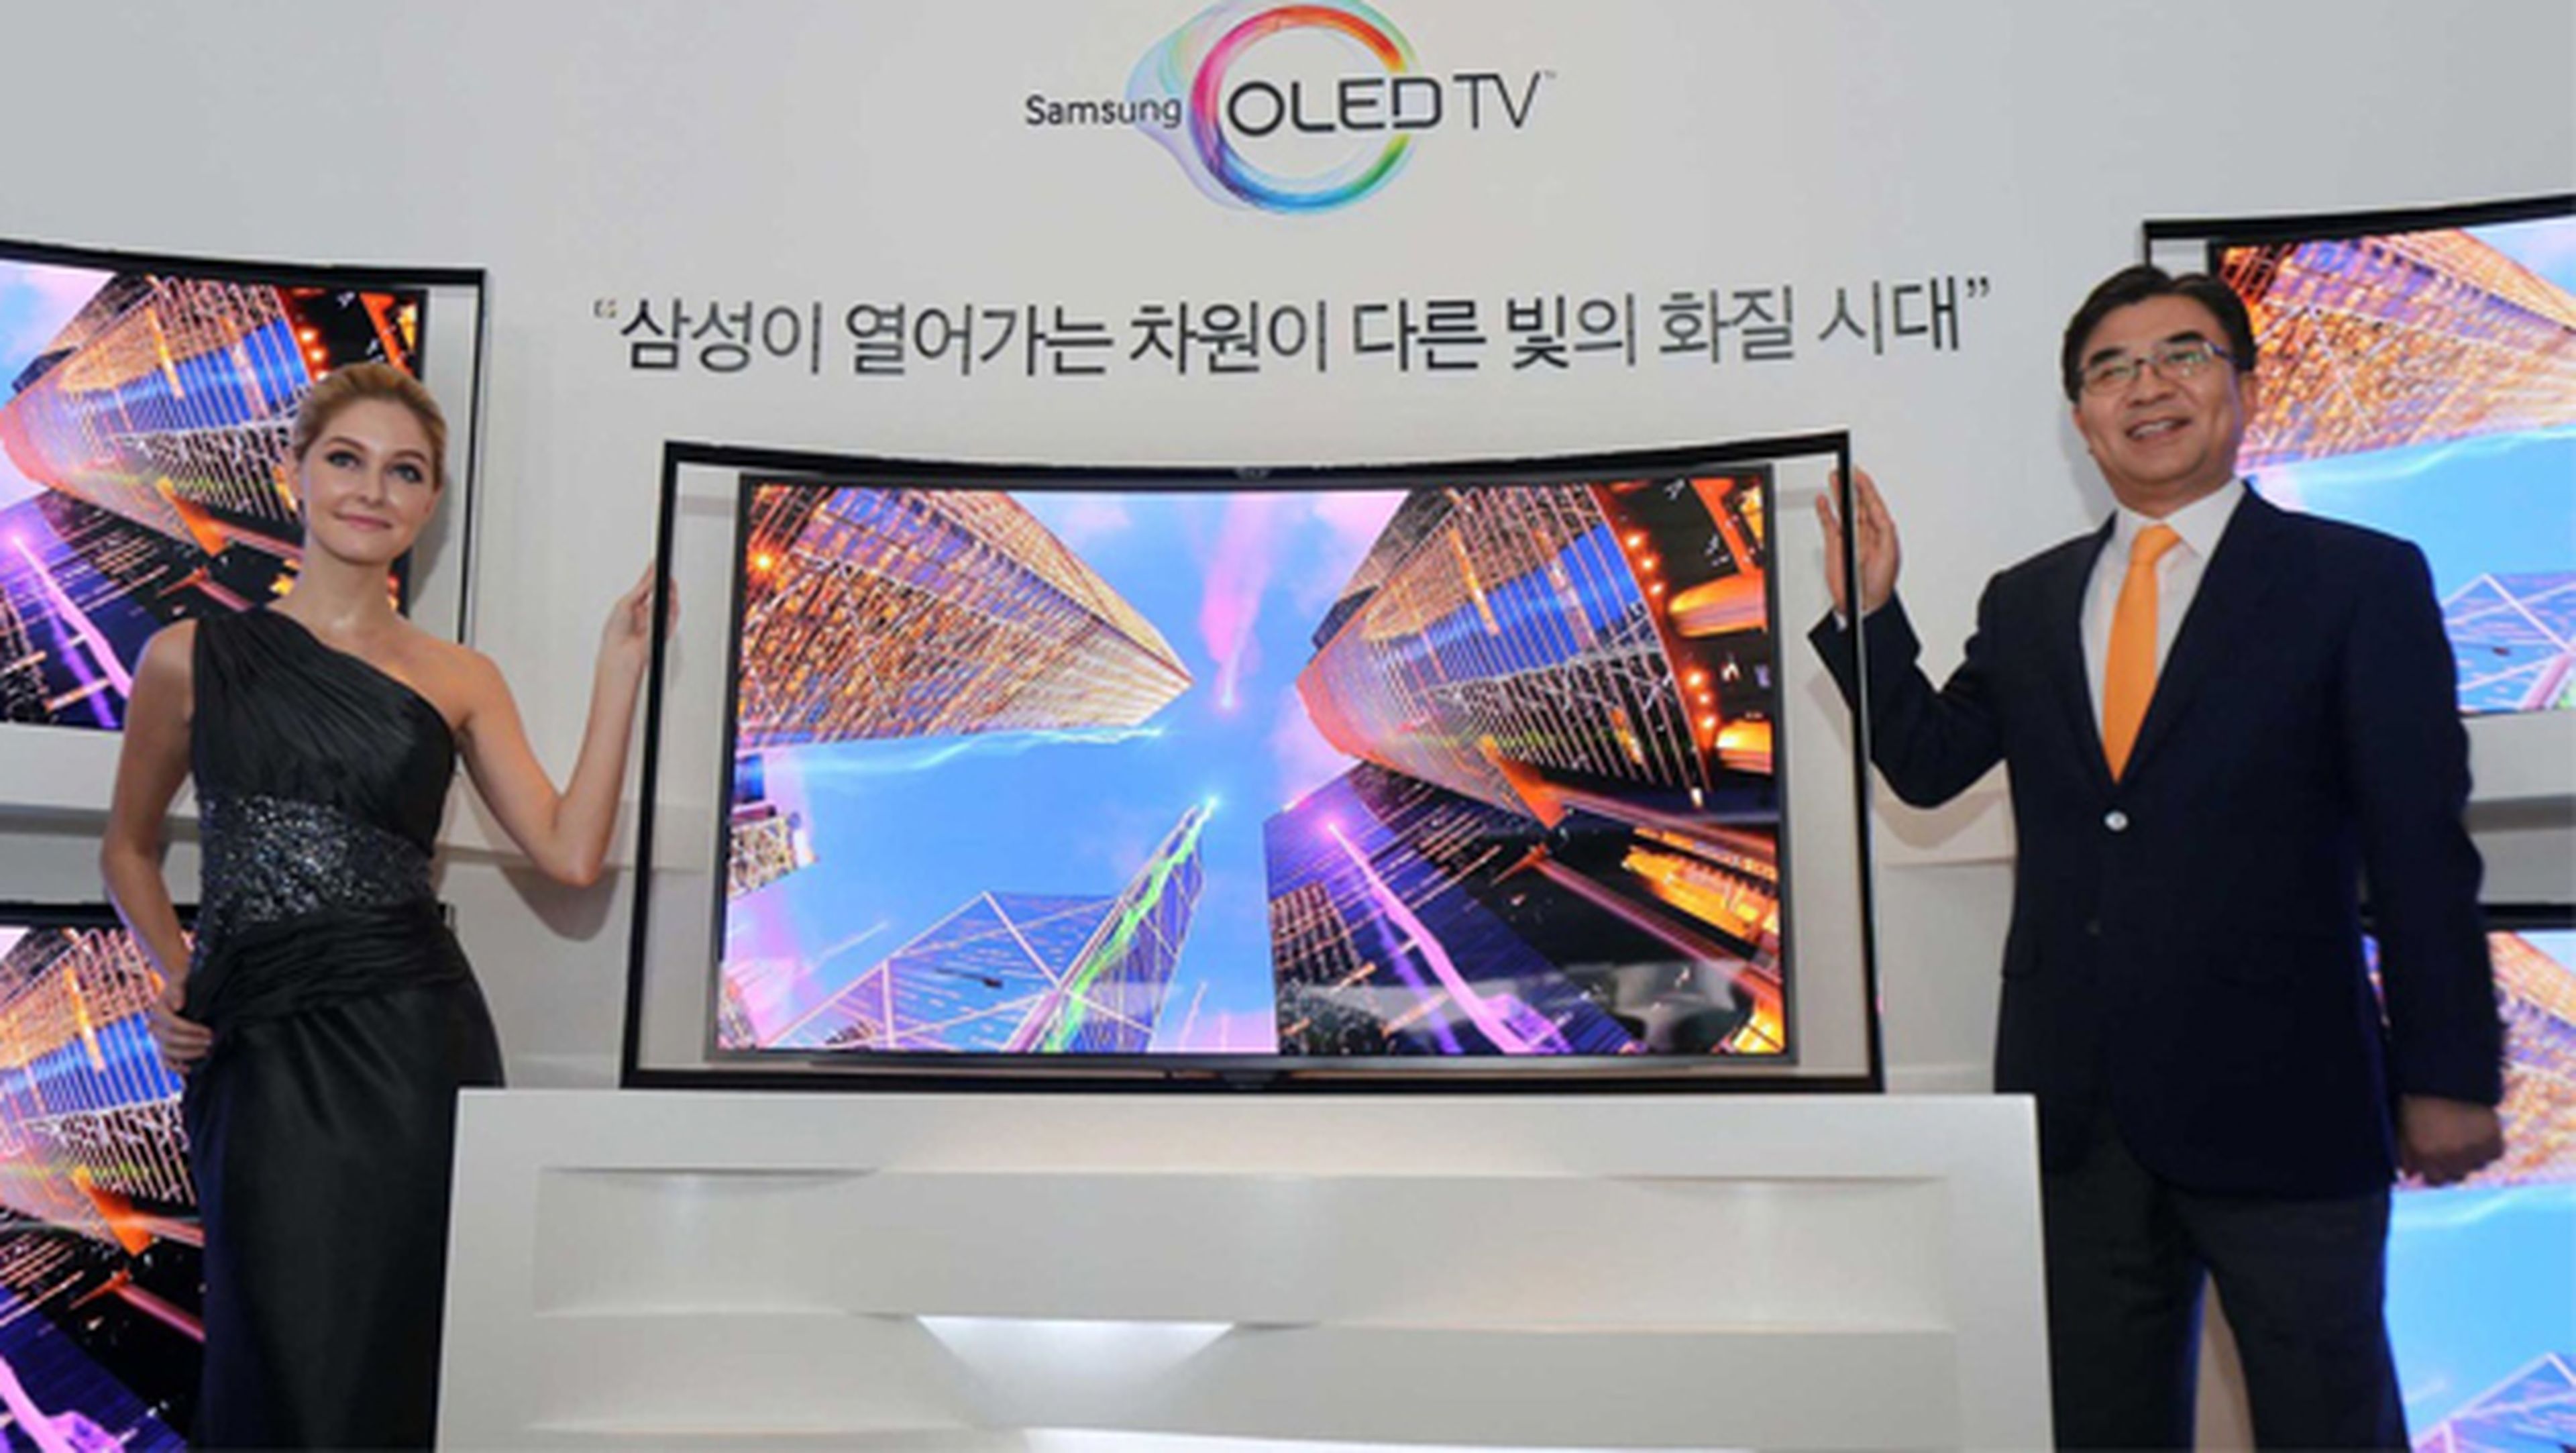 Apple comprará pantallas OLED a Samsung por 2.300 millones